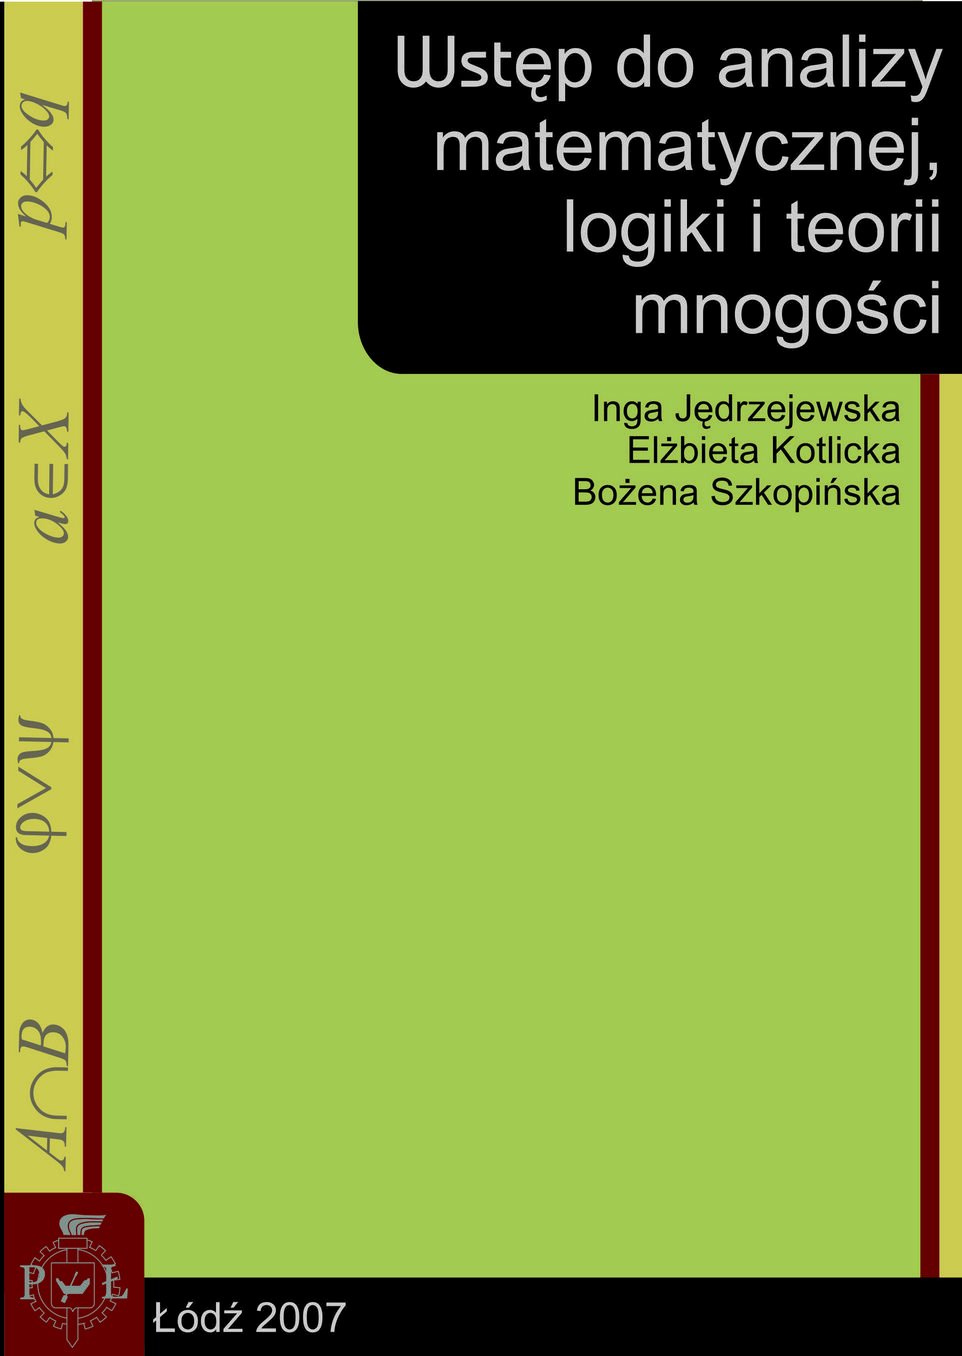 Okładka książki "Wstęp do analizy matematycznej, logiki i teorii mnogości" autorstwa Inga Jędrzejewska, Elżbieta Kotlicka, Bożena Szkopińska 